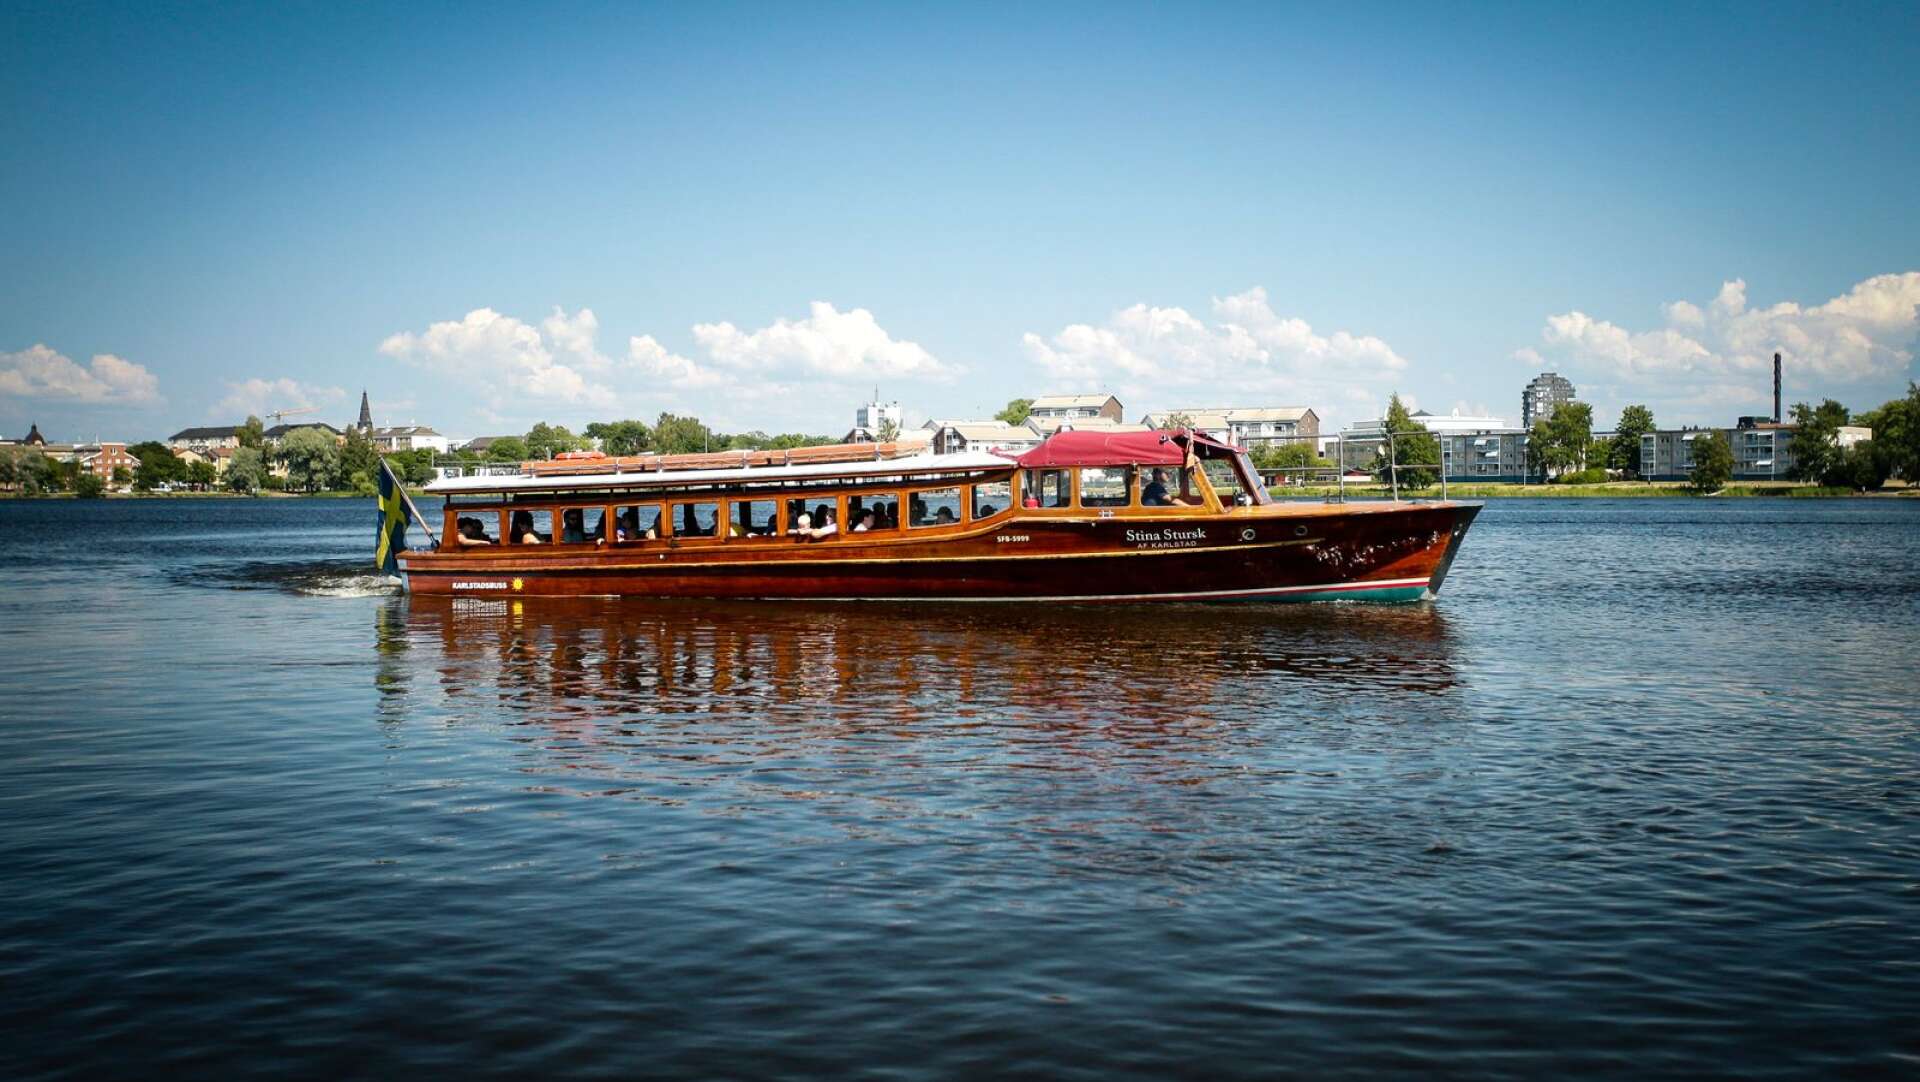 Båtbussarna är en stor framgång för att öka tillgången till Klarälven och Vänern för turister och Karlstadsbor. Samtidigt har Mariebergsskogens ledning både idéer om undervattensakvarium och kallbadhus.